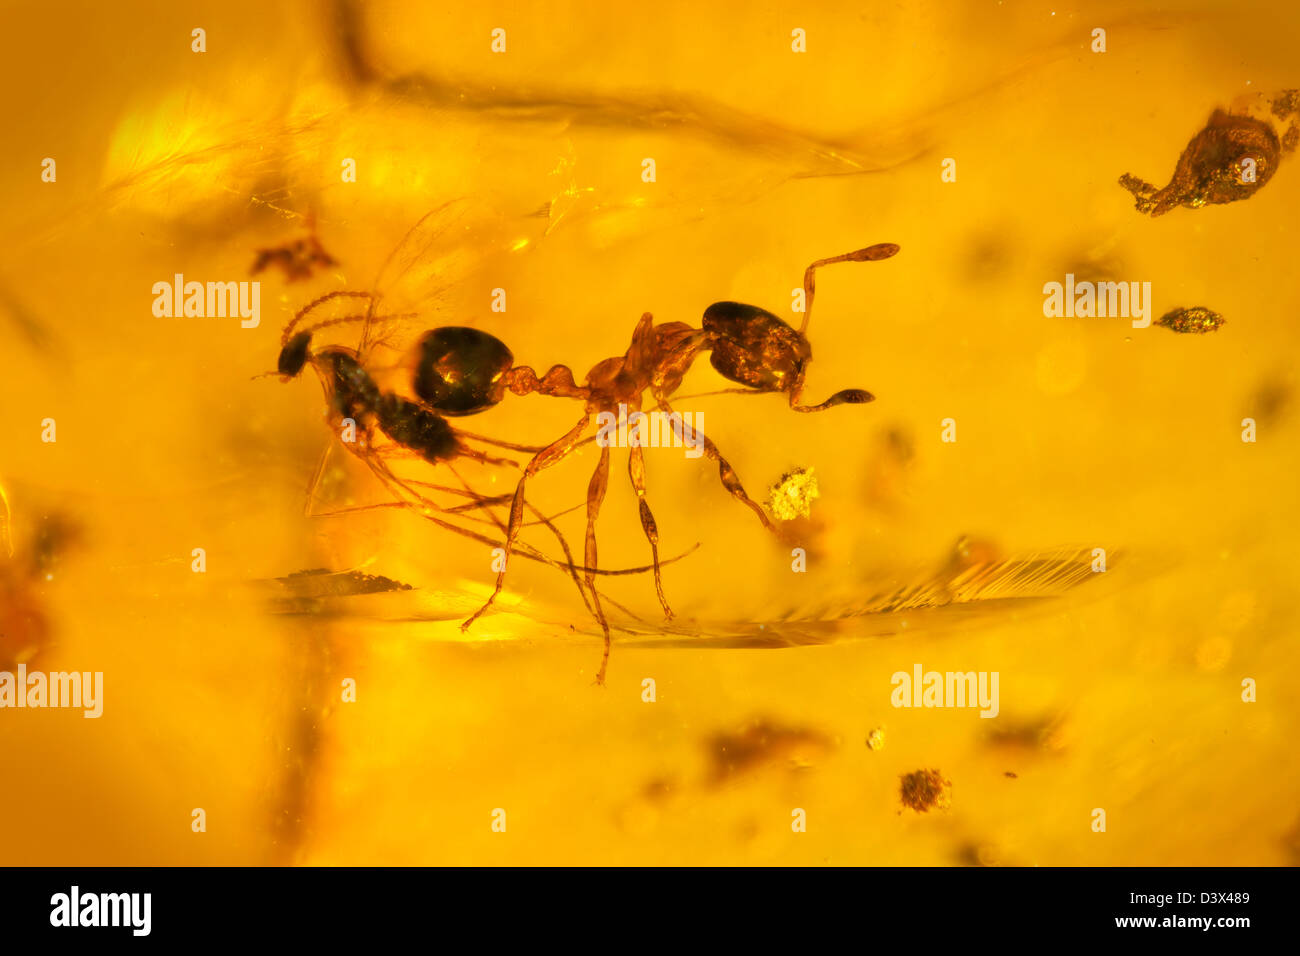 Ámbar dominicano con insectos cautivo, visión macro de insectos congelada en el tiempo Foto de stock